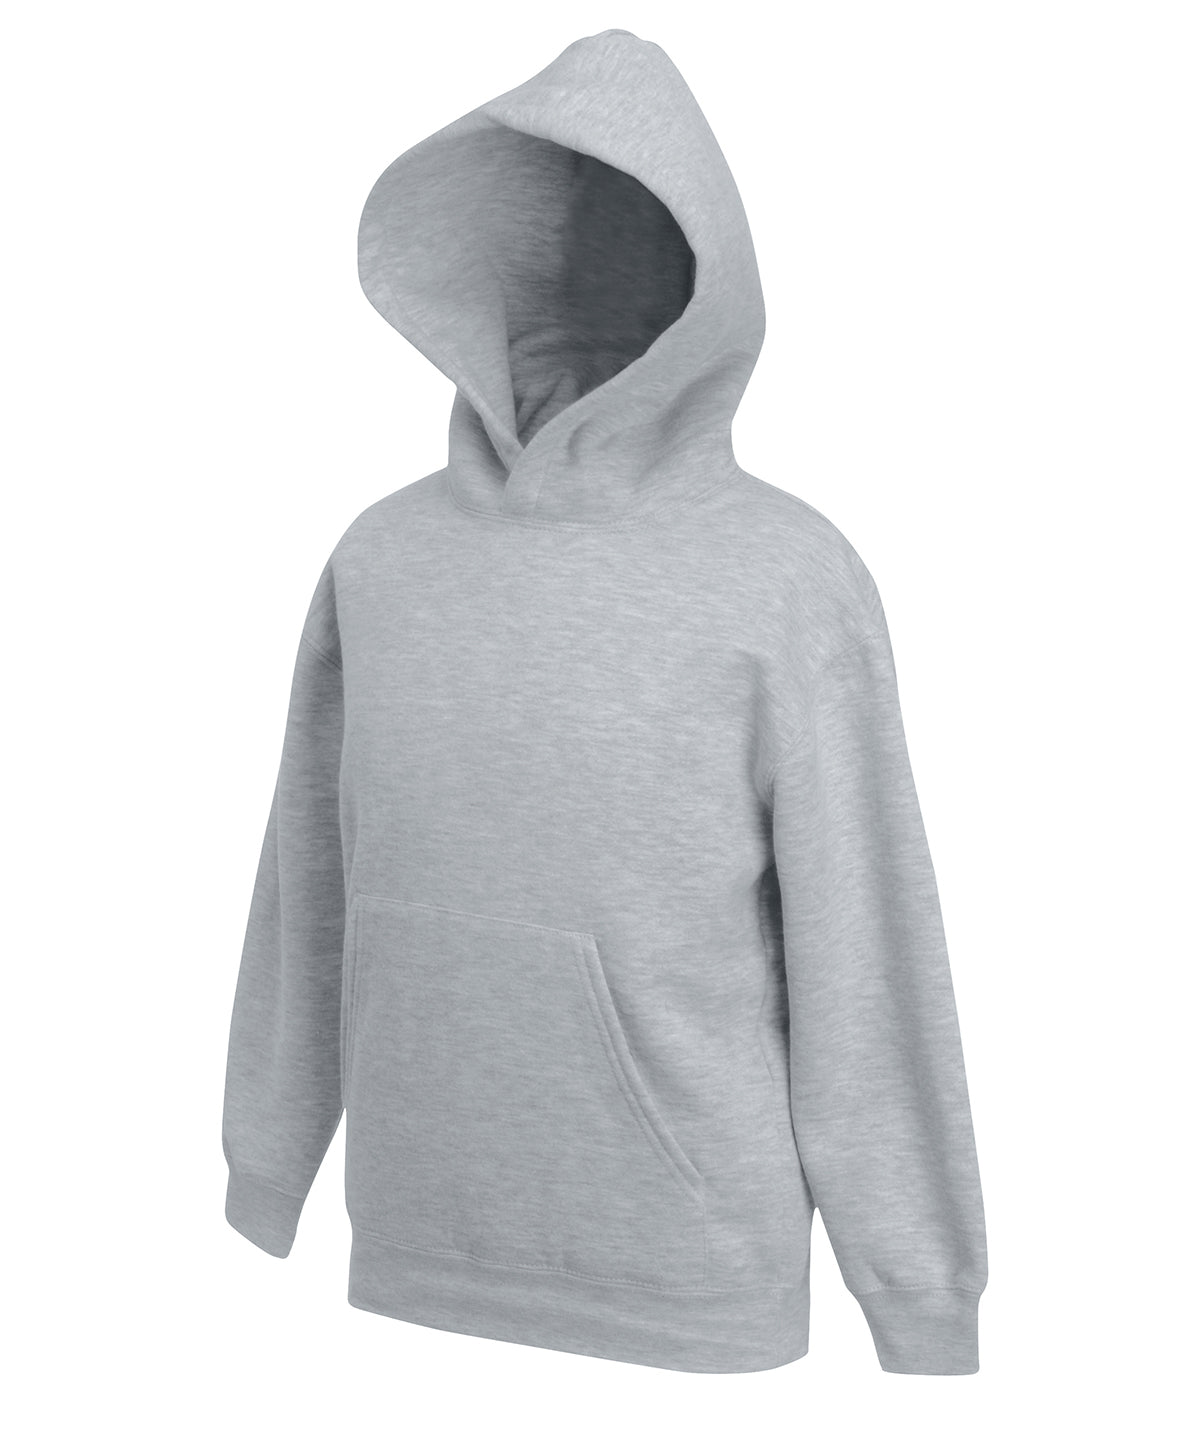 Hettupeysur - Kids Premium Hooded Sweatshirt